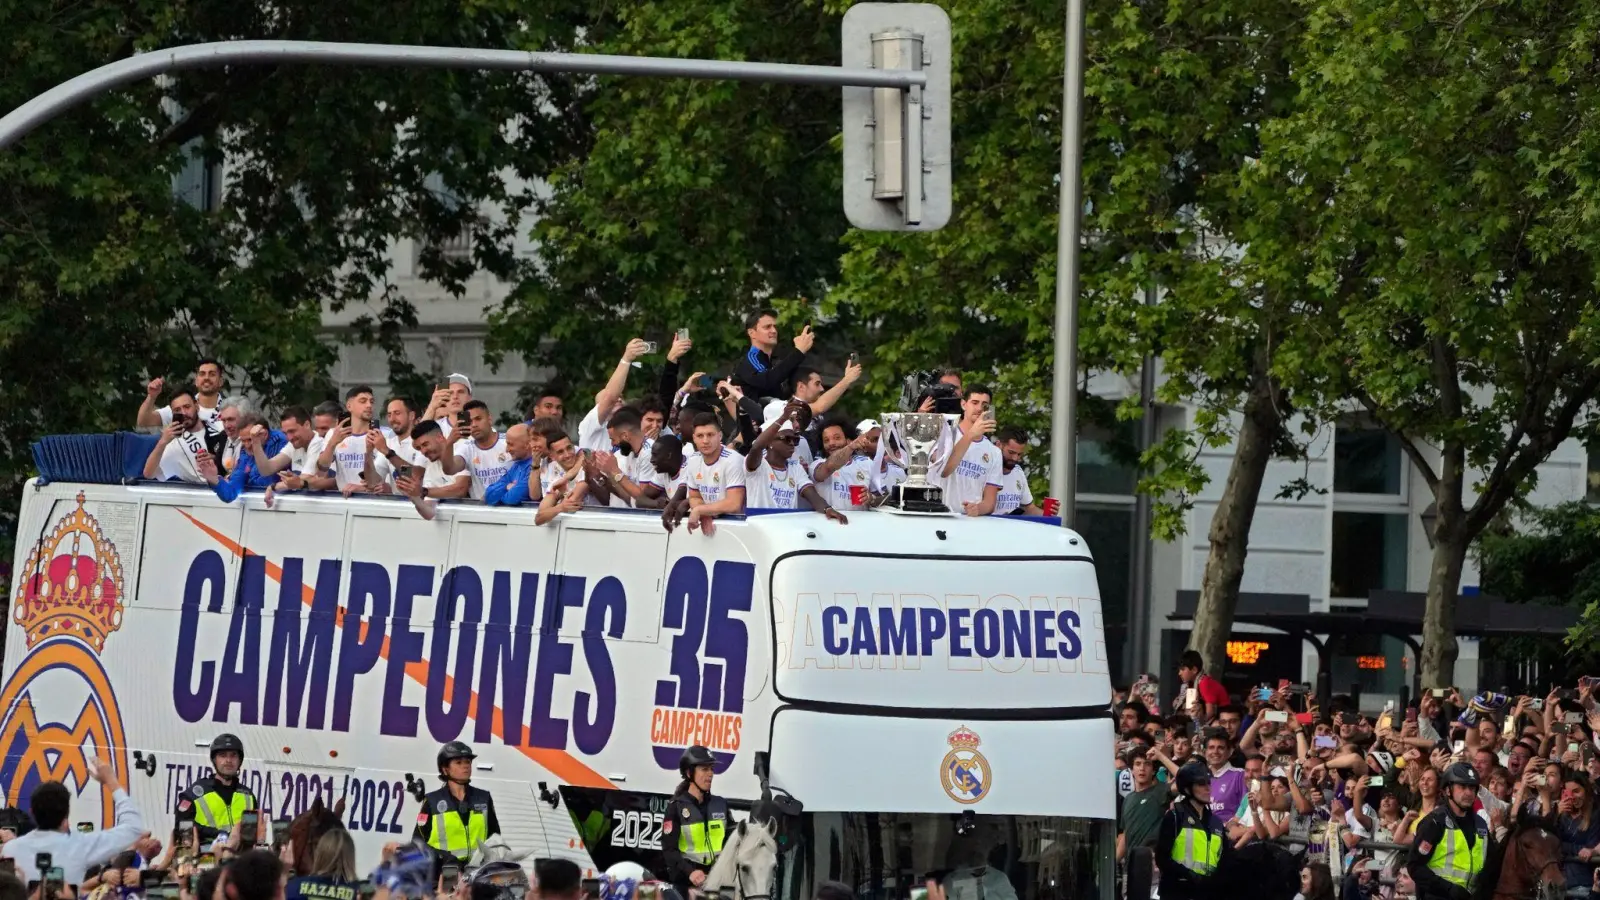 Nach dem Gewinn der spanischen Meisterschaft ging es für das Team von Real Madrid per Bus zur großen Party. (Foto: Paul White/AP/dpa)